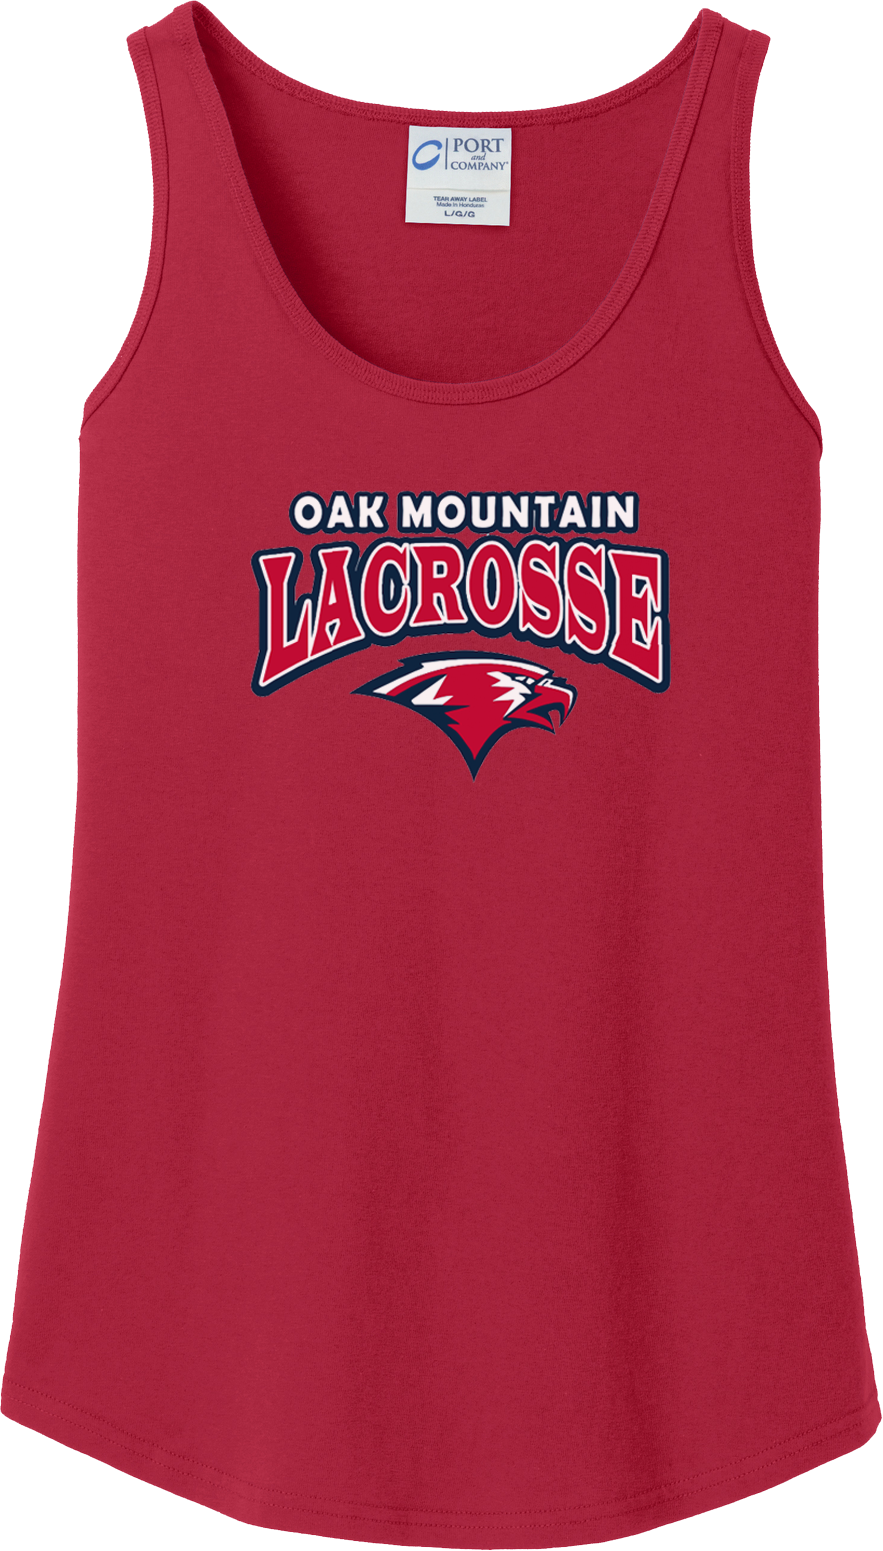 Oak Mtn. Lacrosse Women's Red Tank Top